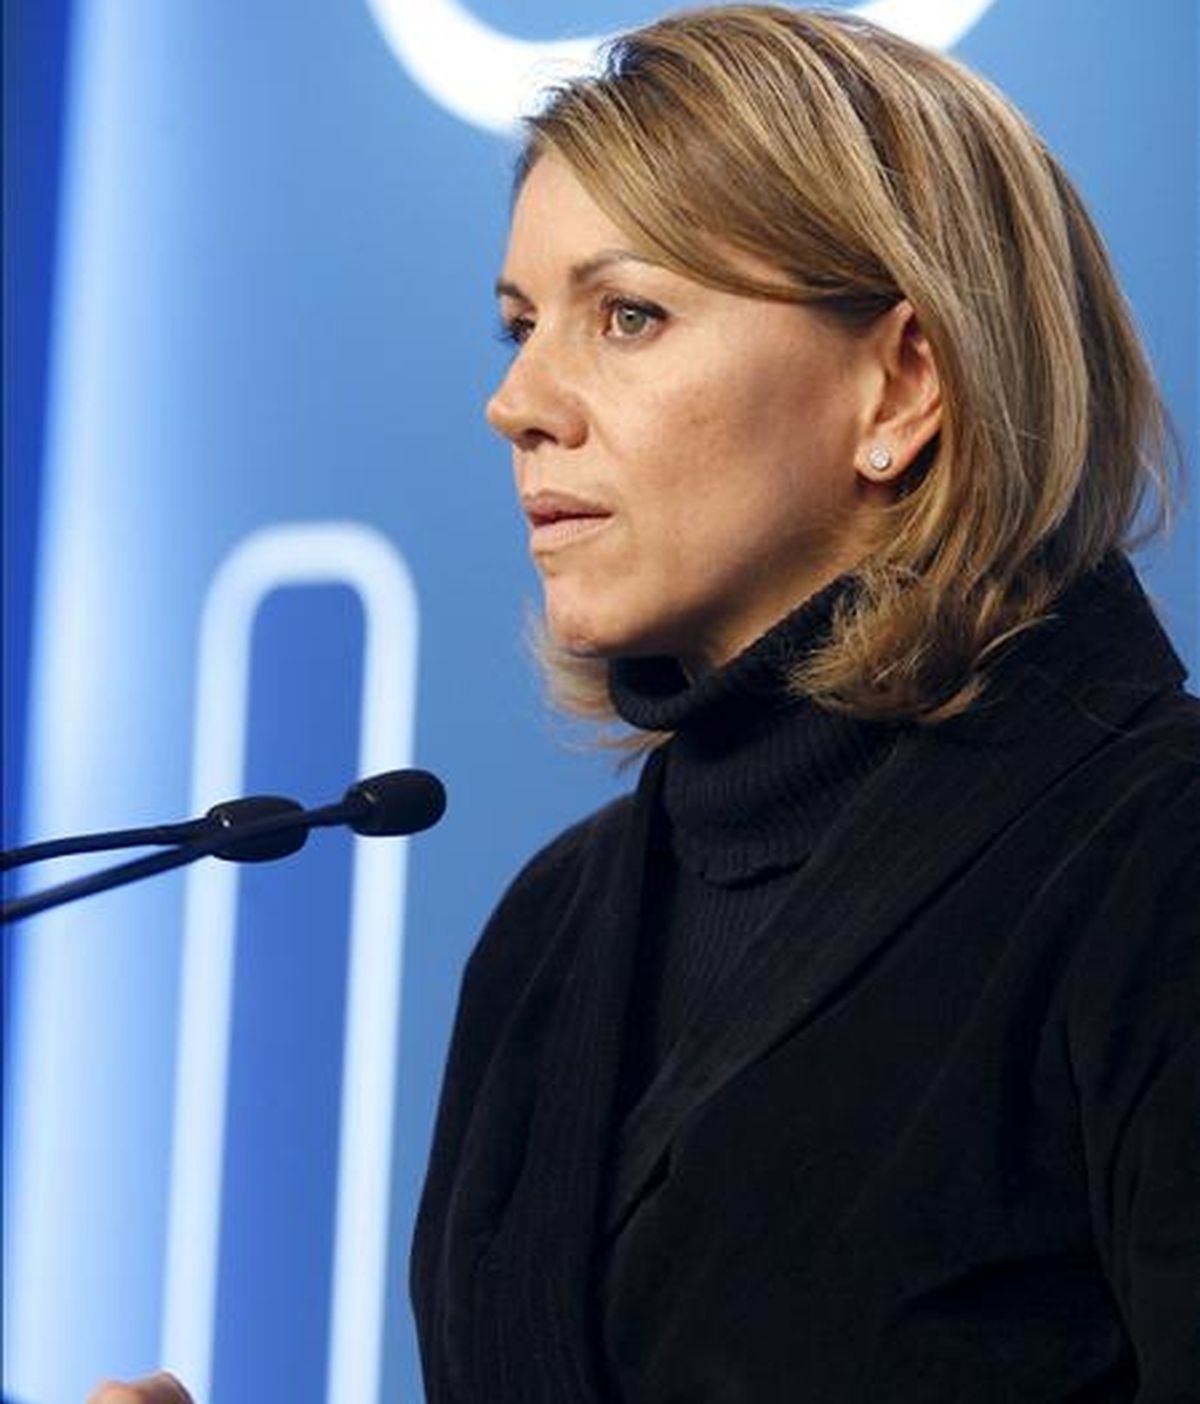 La secretaria general del Partido Popular, María Dolores de Cospedal, durante su comparecencia en la sede del partido en Madrid para seguir el escrutinio de las elecciones catalanas. EFE